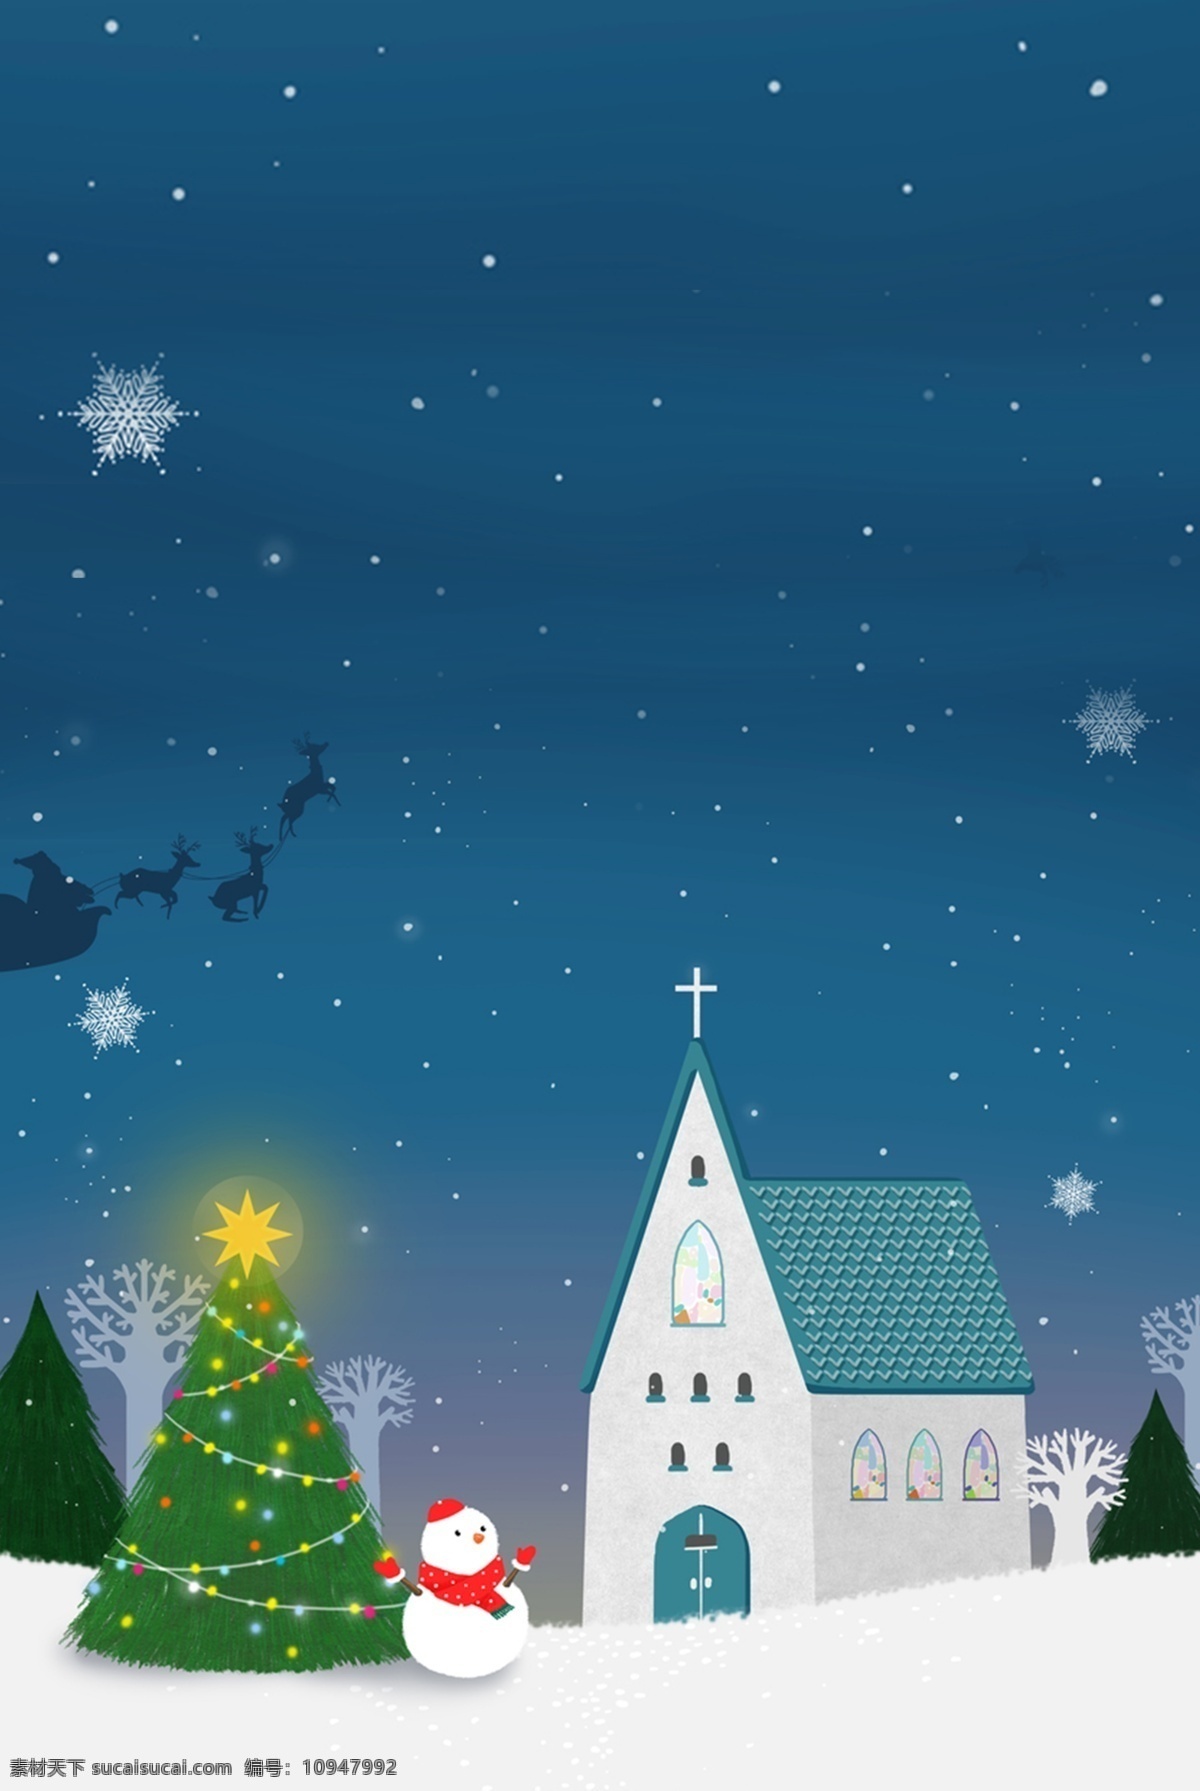 唯美 圣诞节 平安夜 背景 梦幻 星空背景 圣诞素材 村庄 雪地 下雪 广告背景